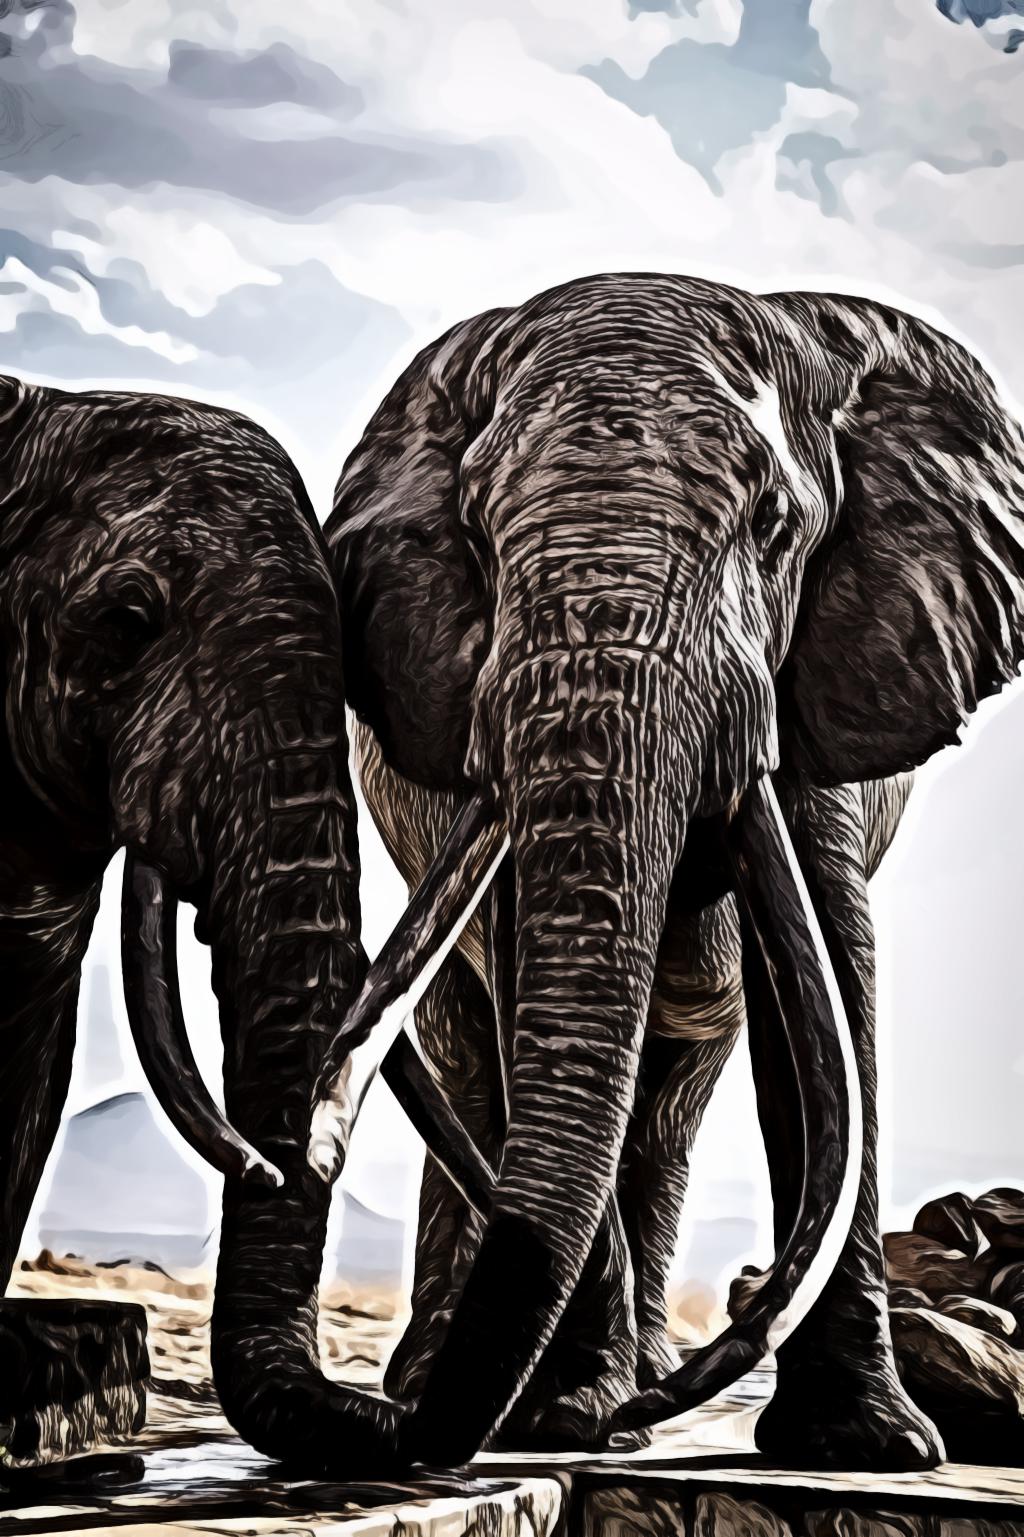 Two grey elephants